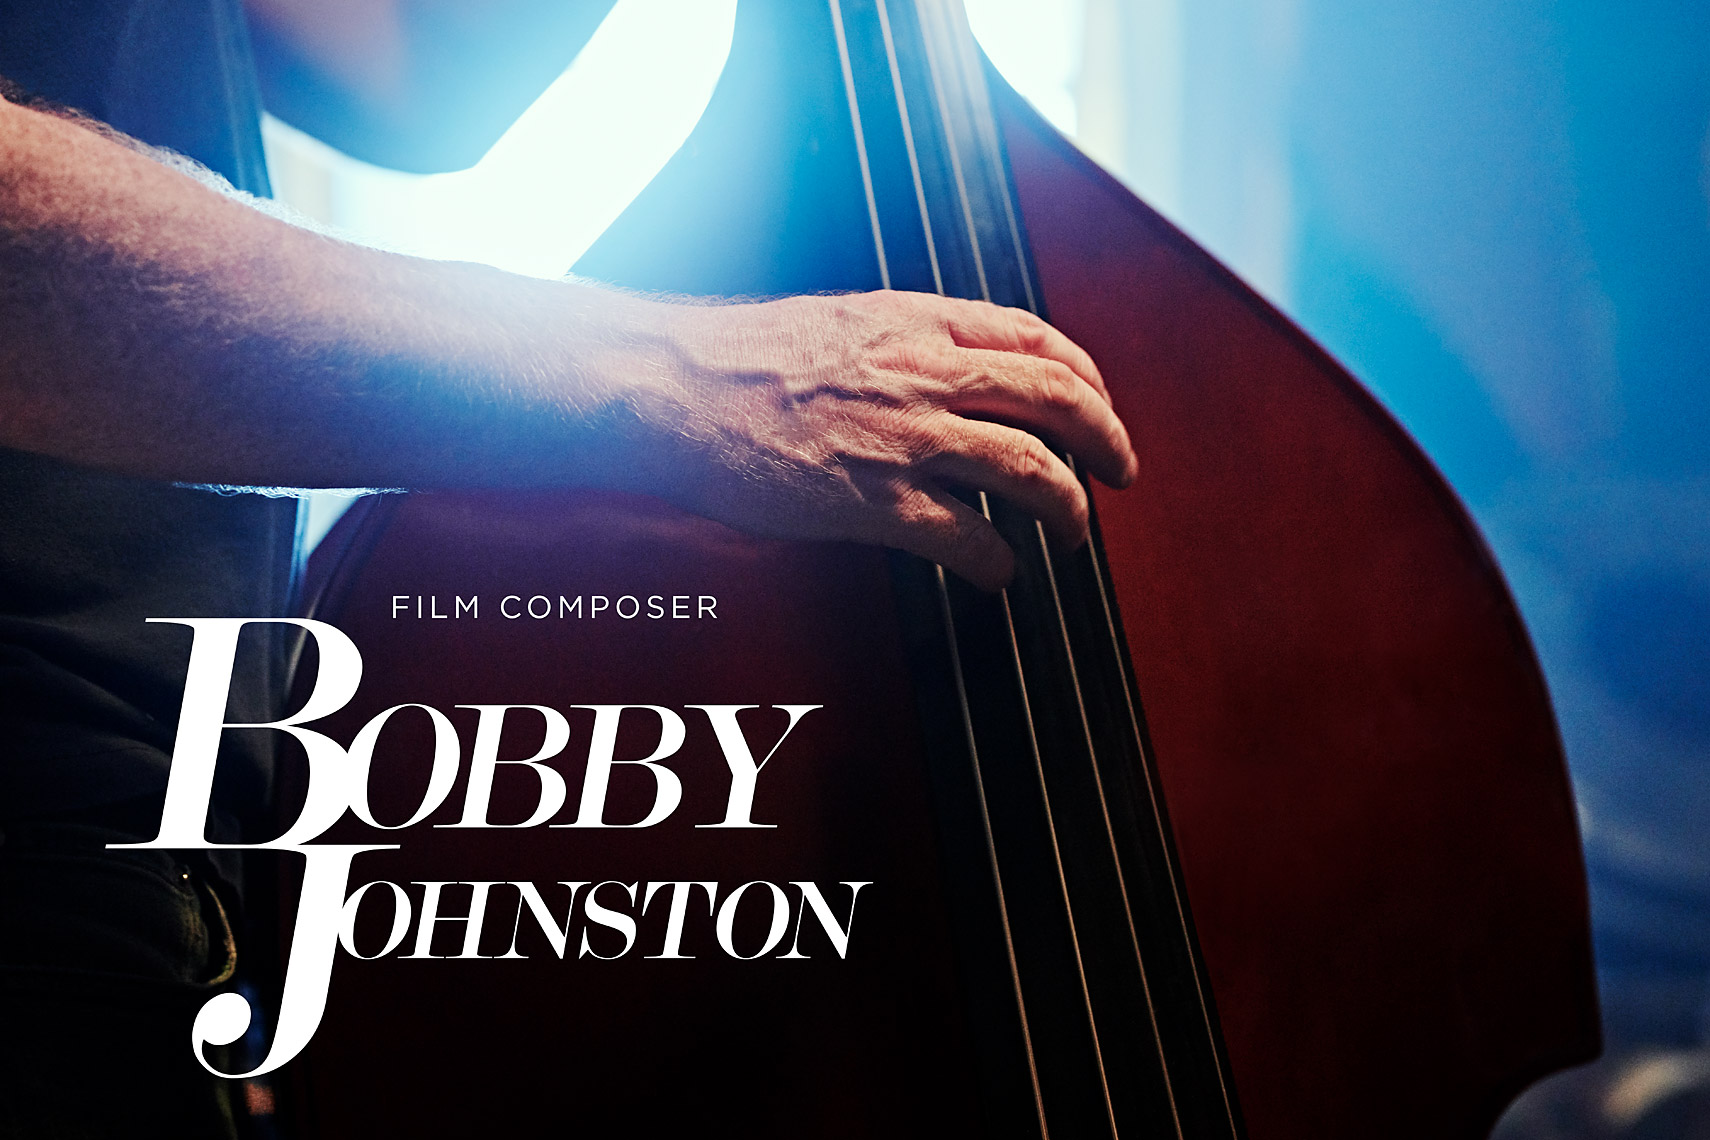 BOBBY JOHNSTON | FILM COMPOSER